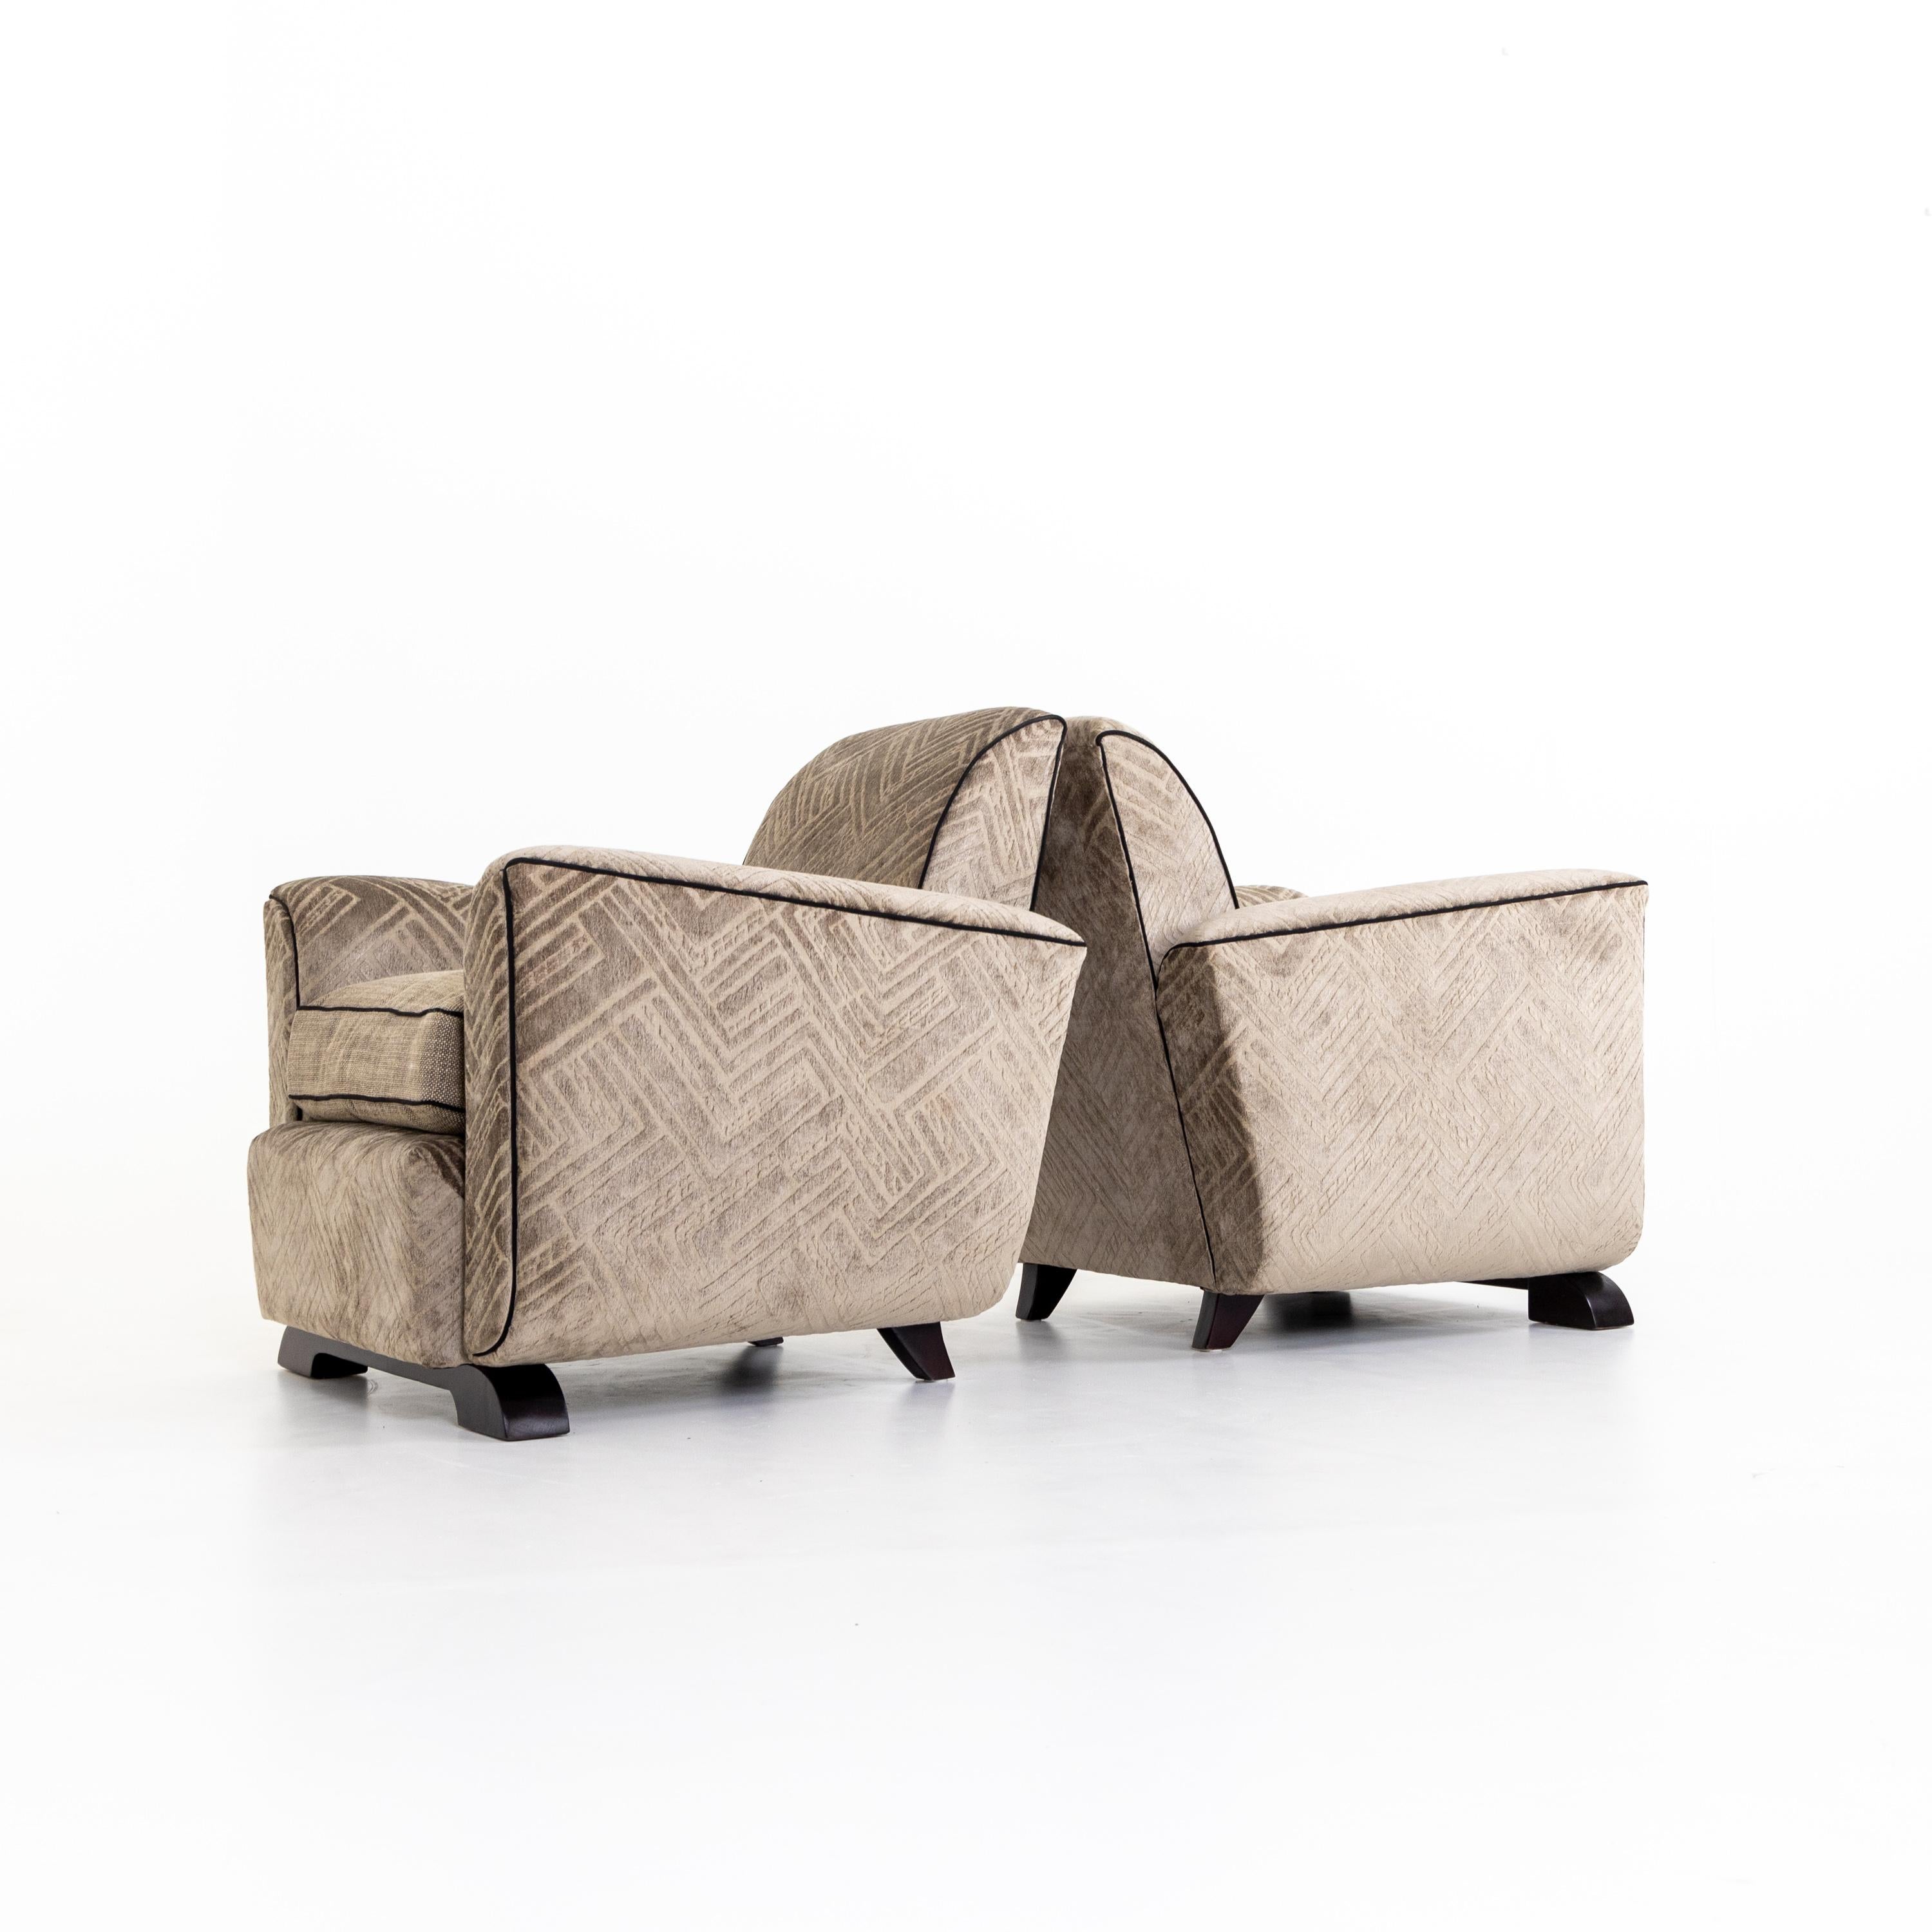 Paar Art-Deco-Sessel mit gepolsterten, leicht tulpenförmigen Sitzen auf Holzbeinen. Die Sessel wurden mit einem grau-braunen Stoff mit geometrischem Muster neu gepolstert.